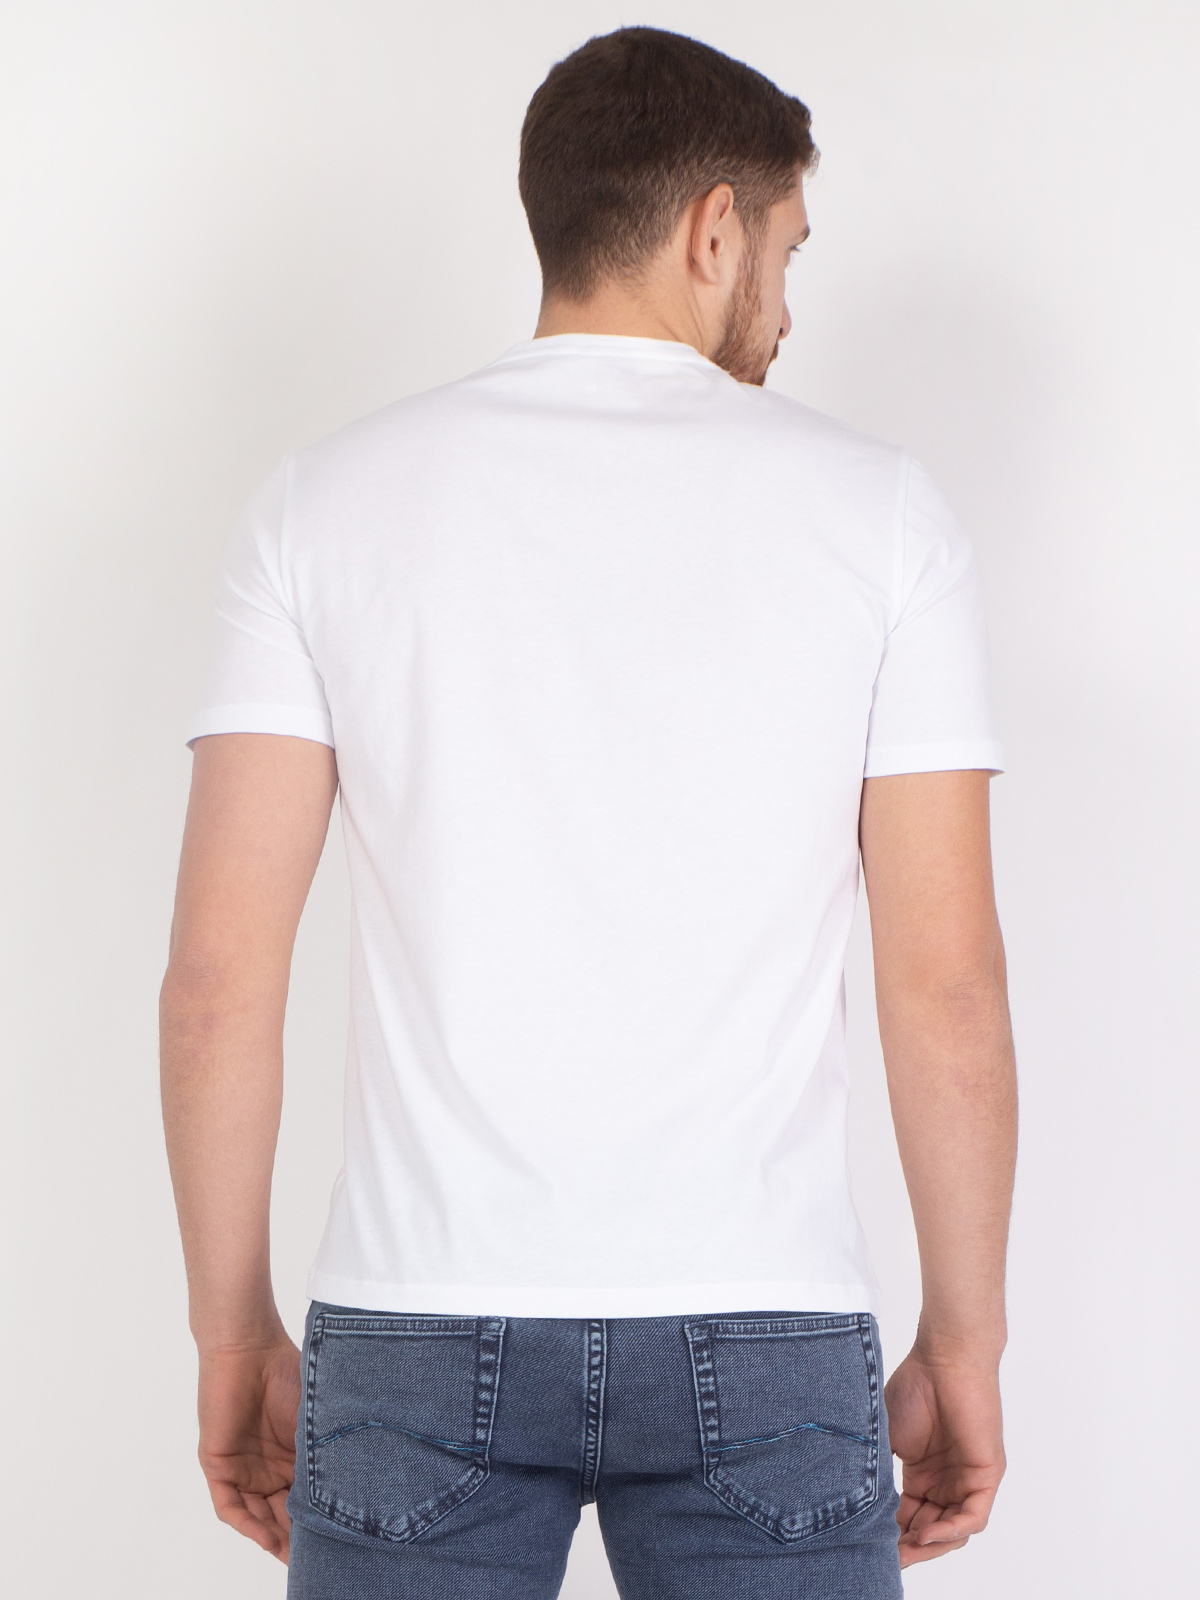 Λευκό μπλουζάκι με χρωματιστά τετράγωνα - 96397 € 27.56 img4